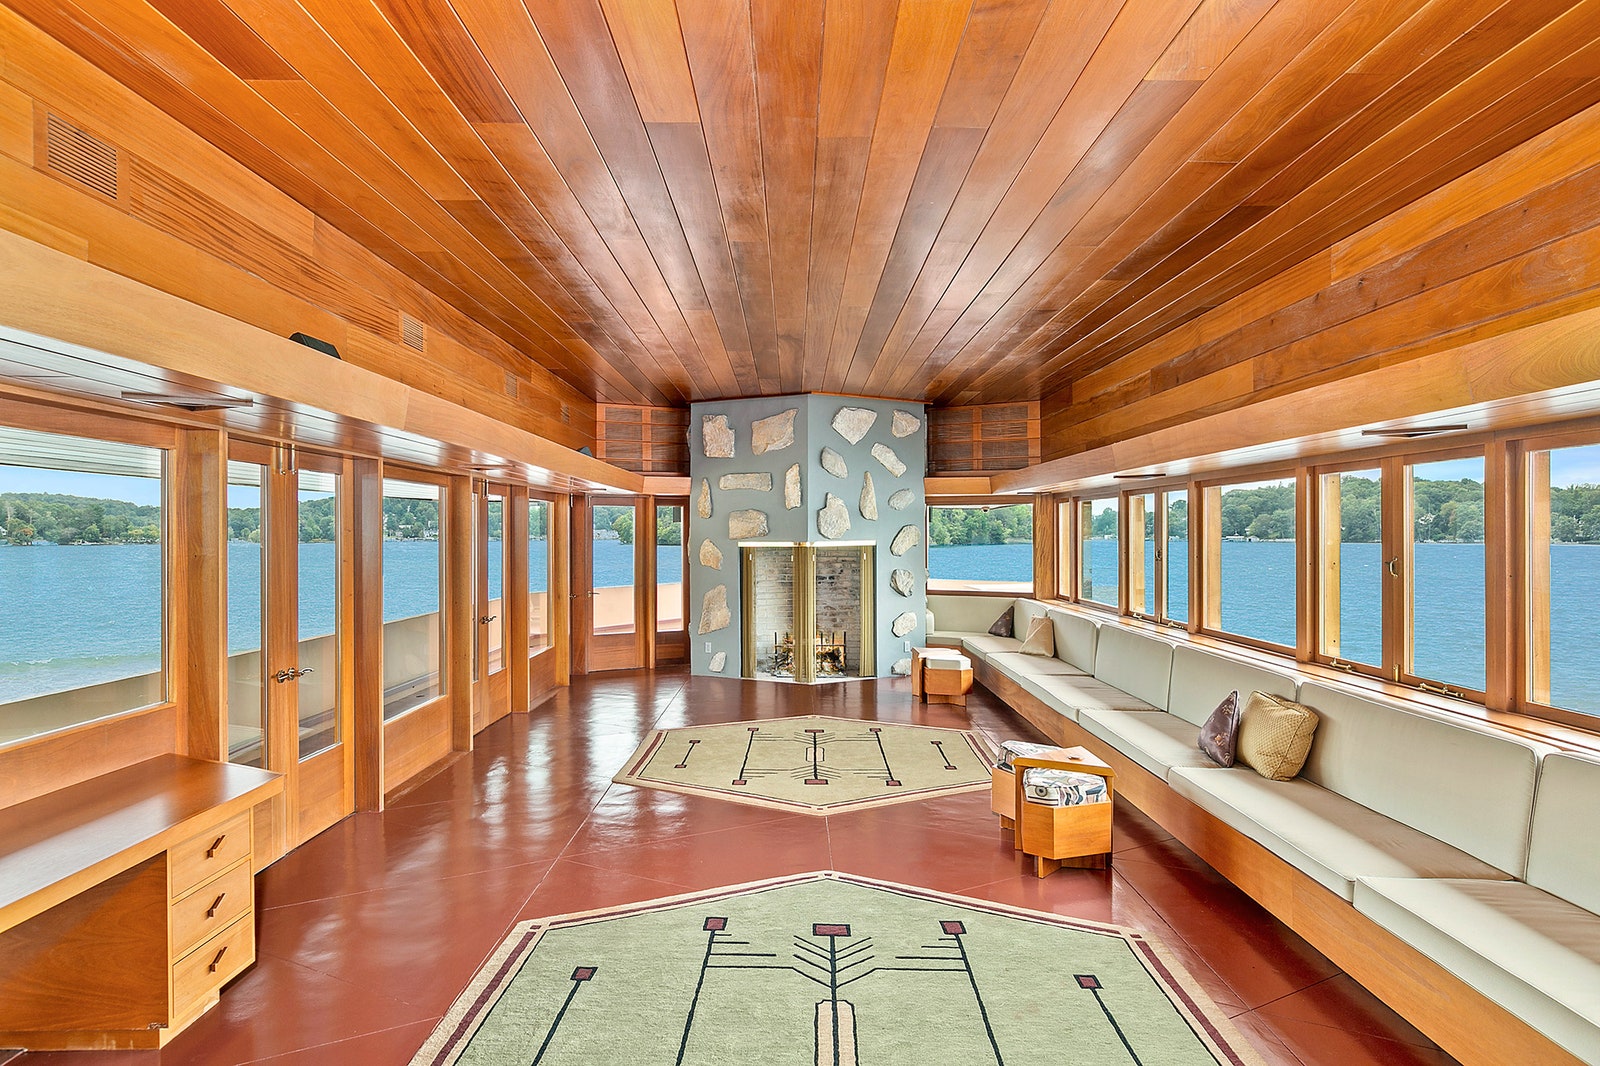 Райт или не Райт частный остров с домами по проекту Фрэнка Ллойда Райта продают за 129 млн долларов